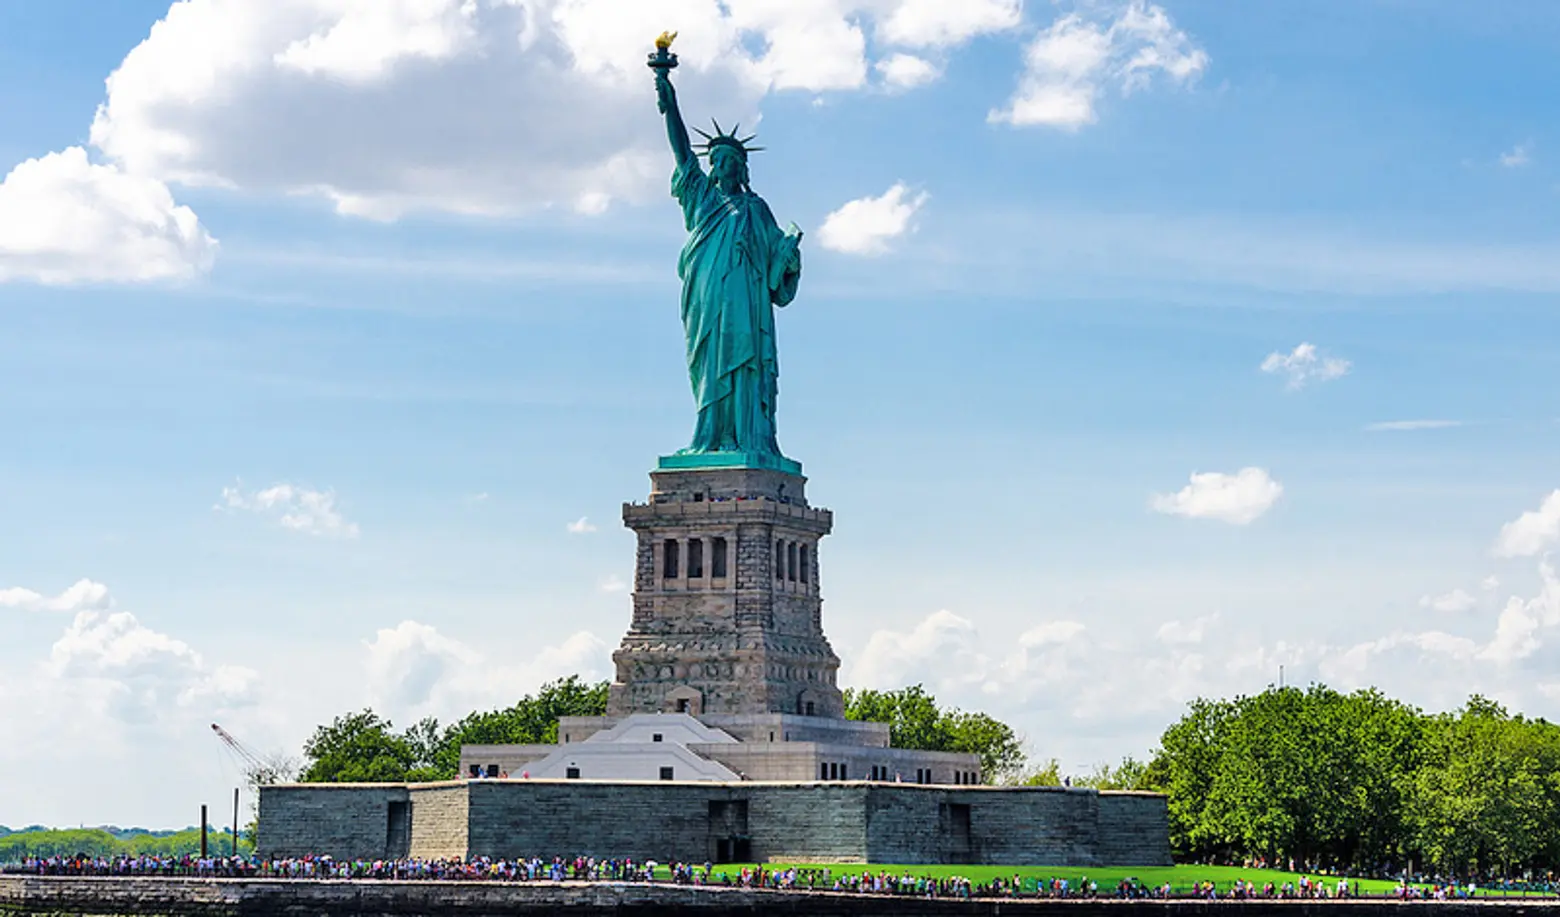 Diane von Furstenberg Will Help Fund New Statue of Liberty Museum